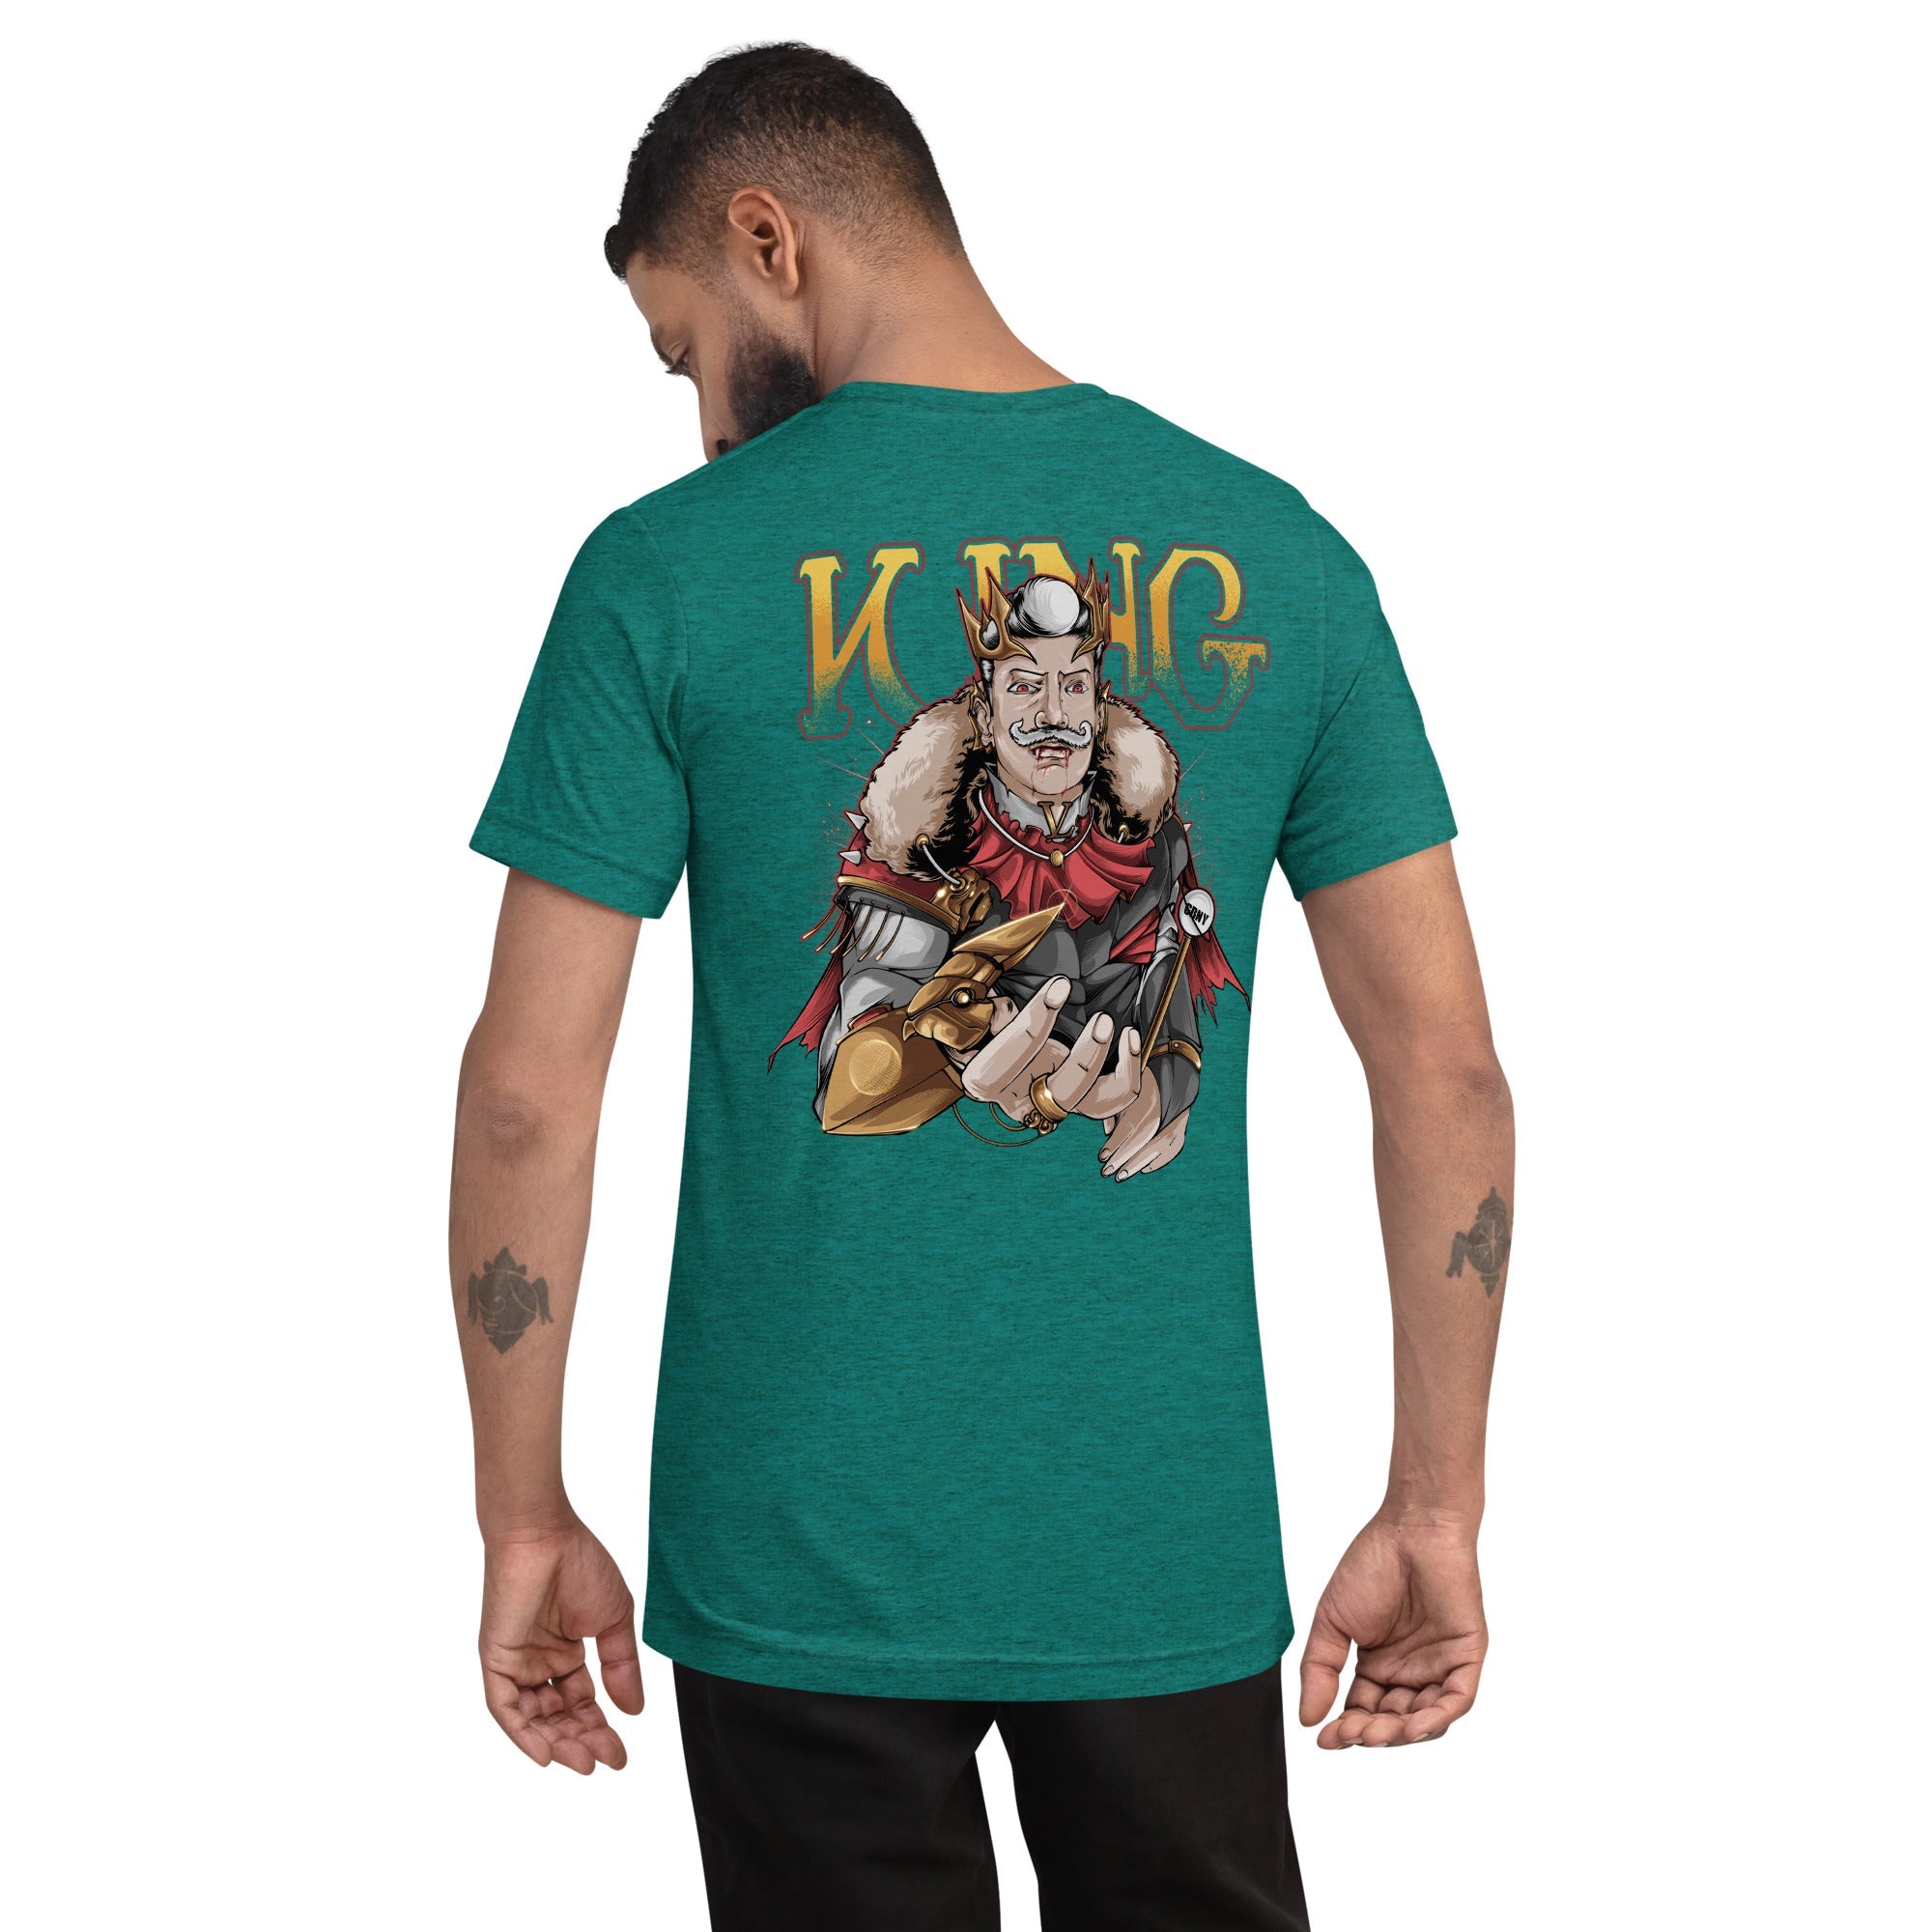 GBNY Teal Triblend / XS Vamp Life X GBNY "Vamp King" T-shirt - Men's 8741511_6592